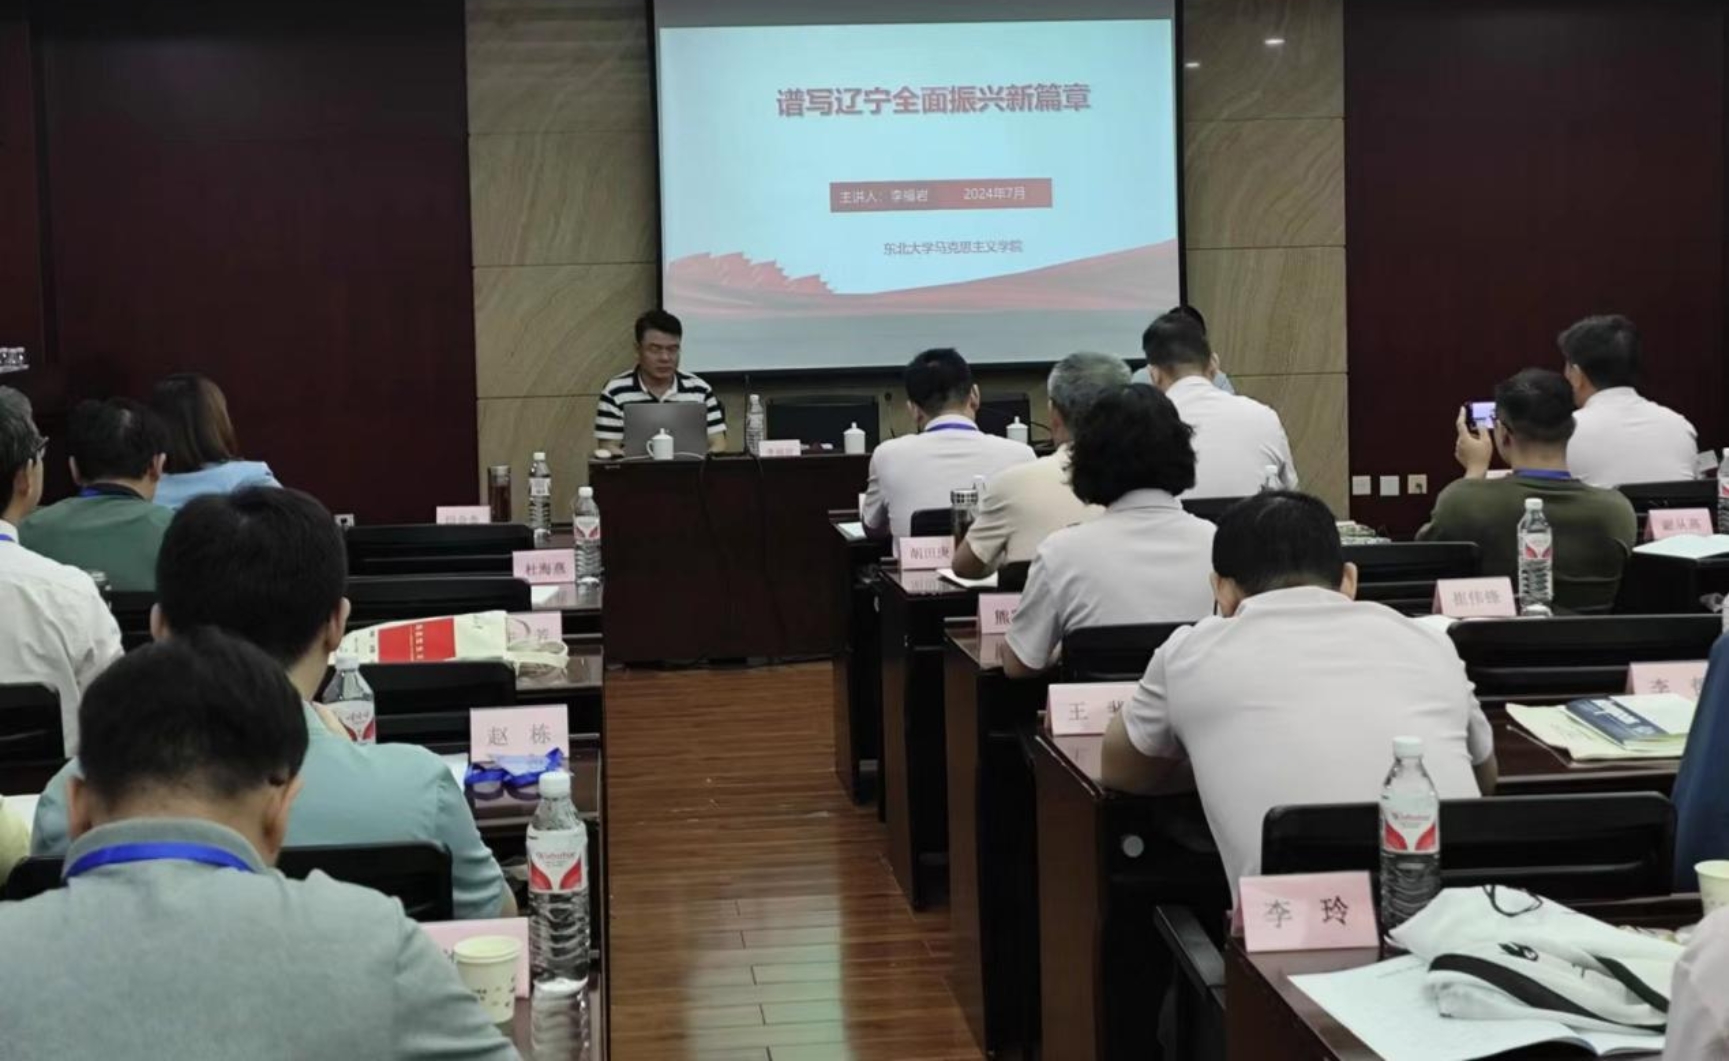 马克思主义学院组织思政课教师赴沈阳参加社会实践研修活动 